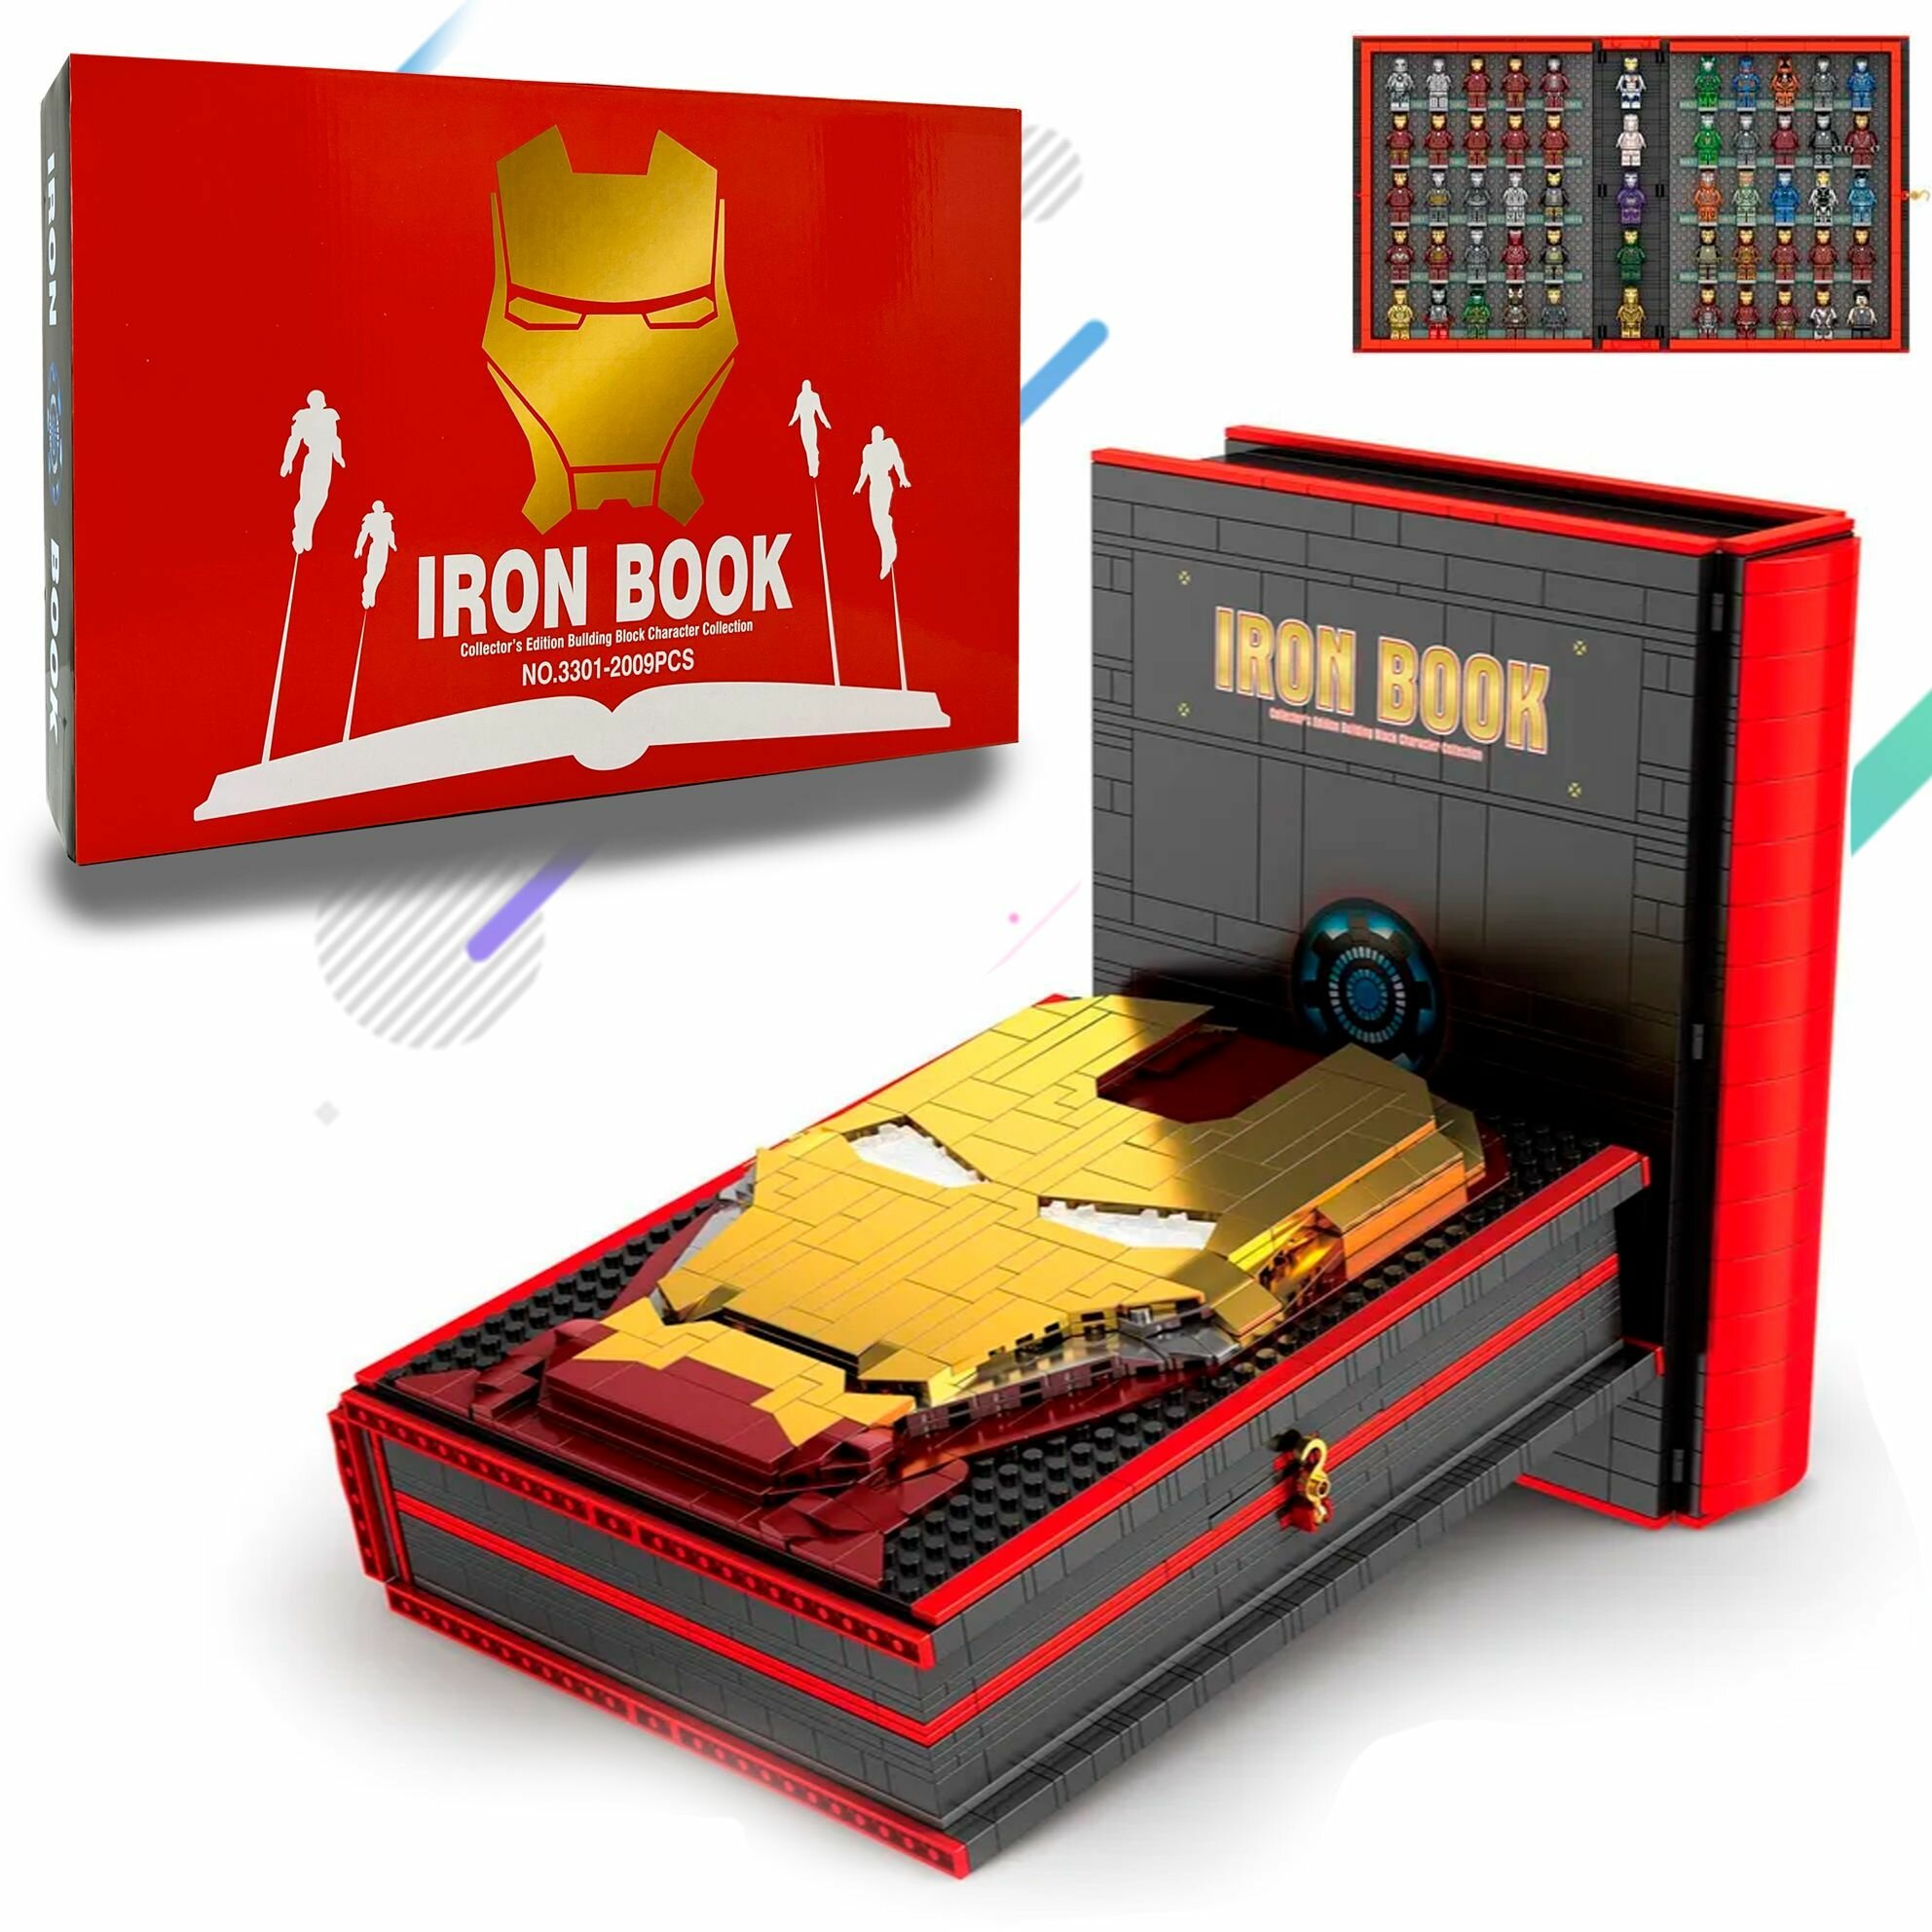 Конструктор Iron Book Книга Железного Человека NO.3301 Набор 2009 детали, Подарочный набор для детей взрослых, мальчиков и девочек